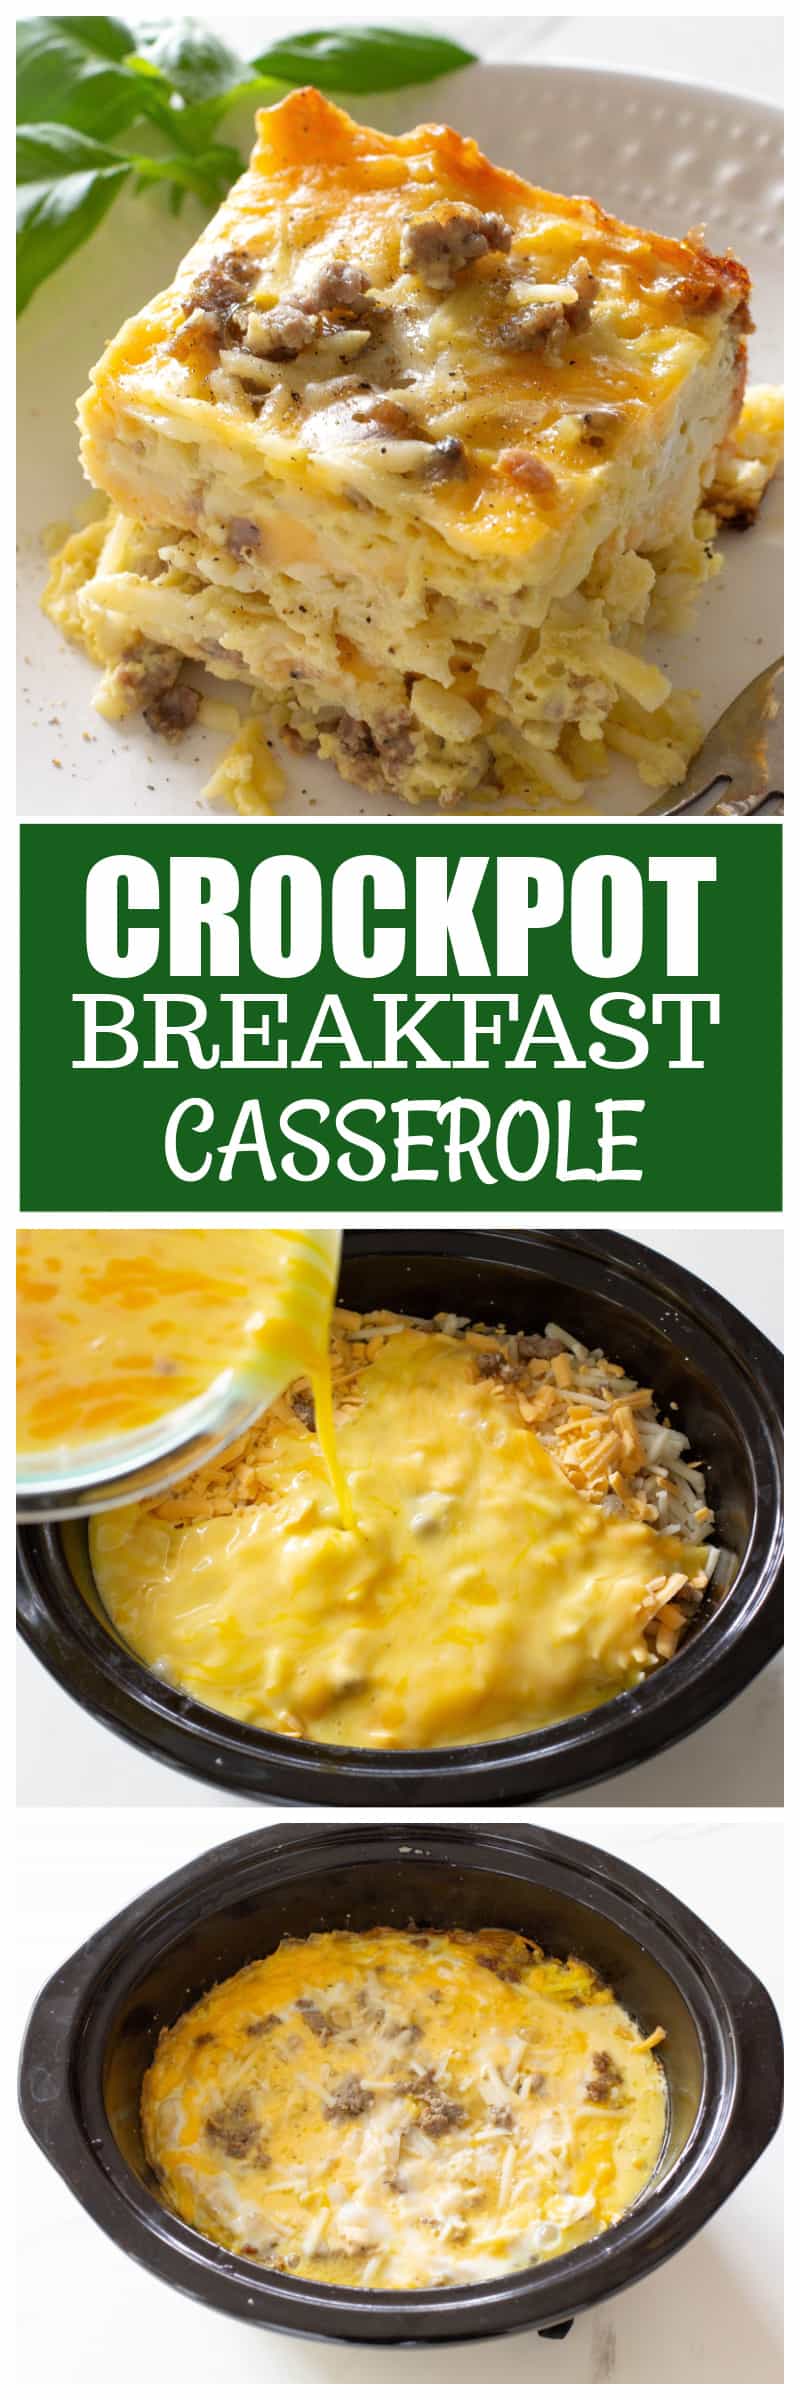 Crock-Pot Fully Loaded Breakfast Casserole + Video - Crock-Pot Ladies